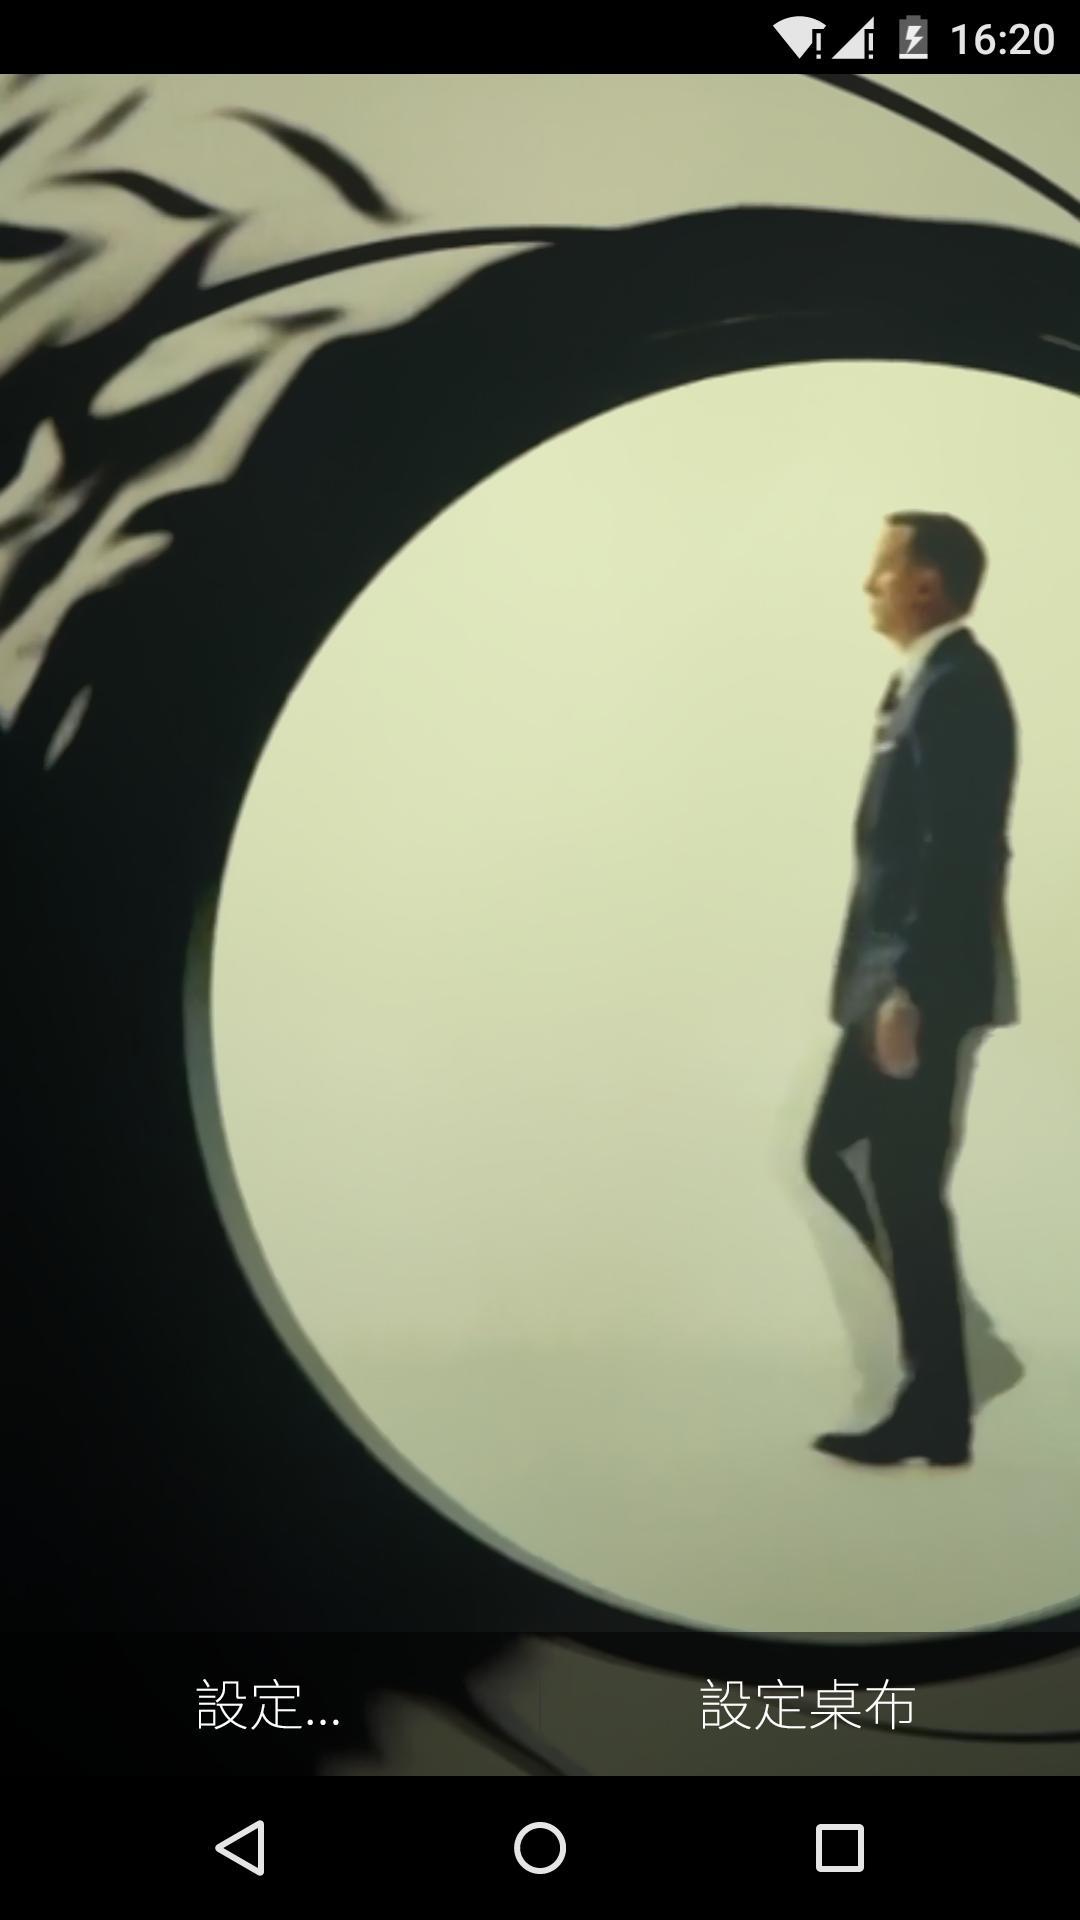 007幽灵党-梦象动态壁纸截图3